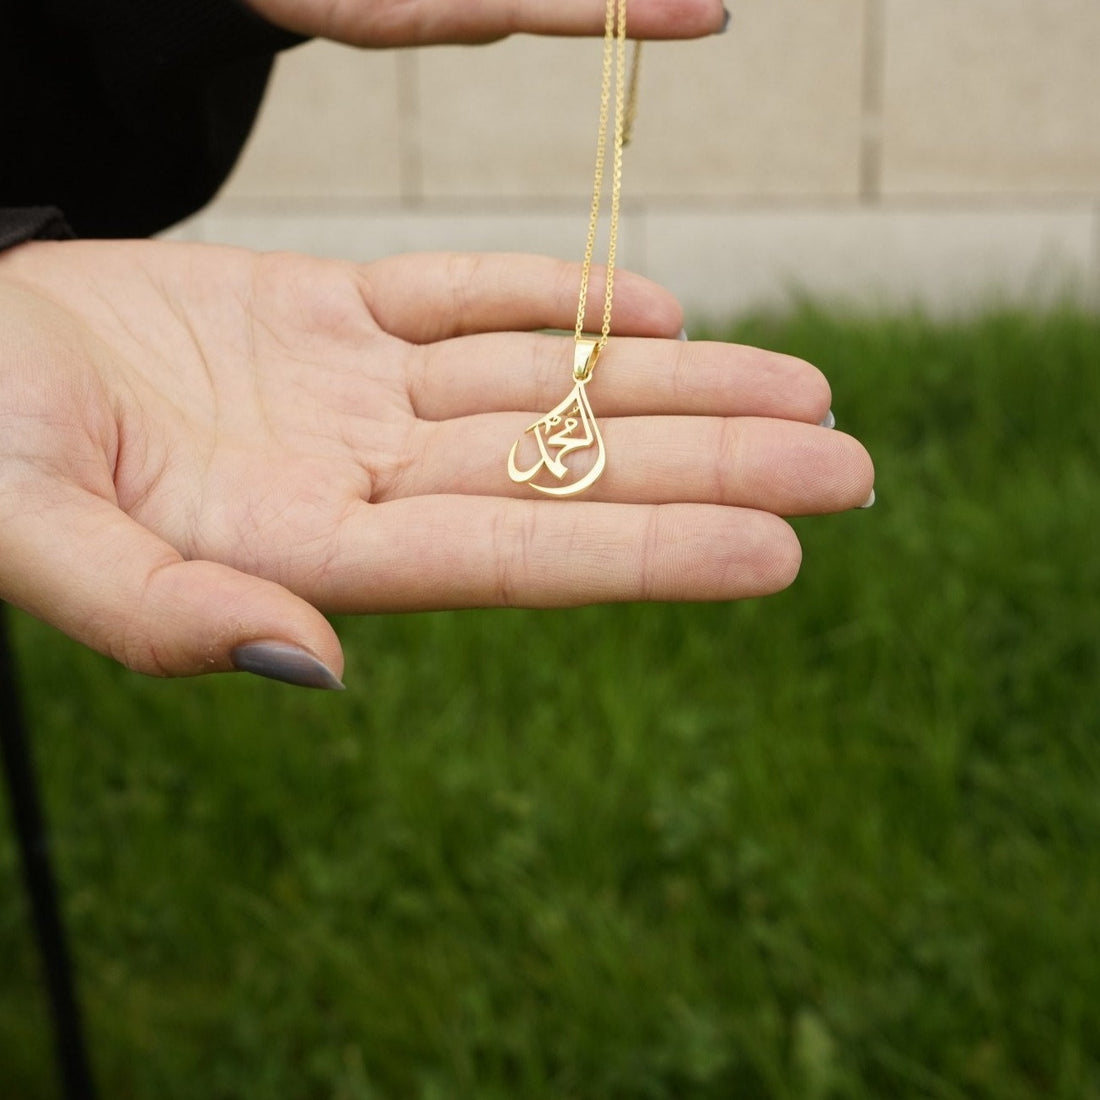 islamic-jewelry-arabic-mohammad-written-islamic-necklace-18k-gold-pendant-on-925-silver-women&